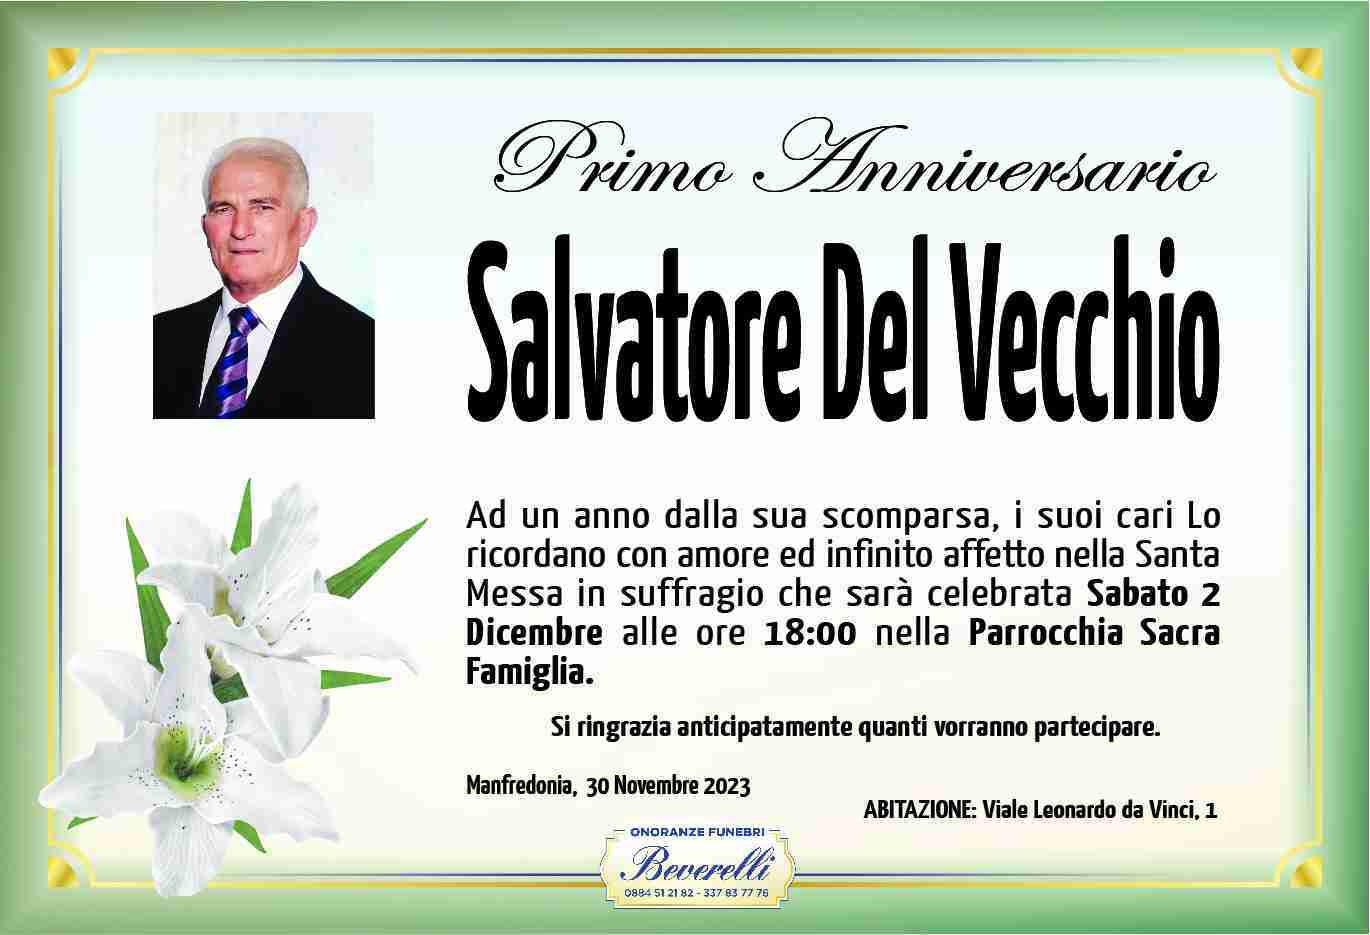 Salvatore Del Vecchio